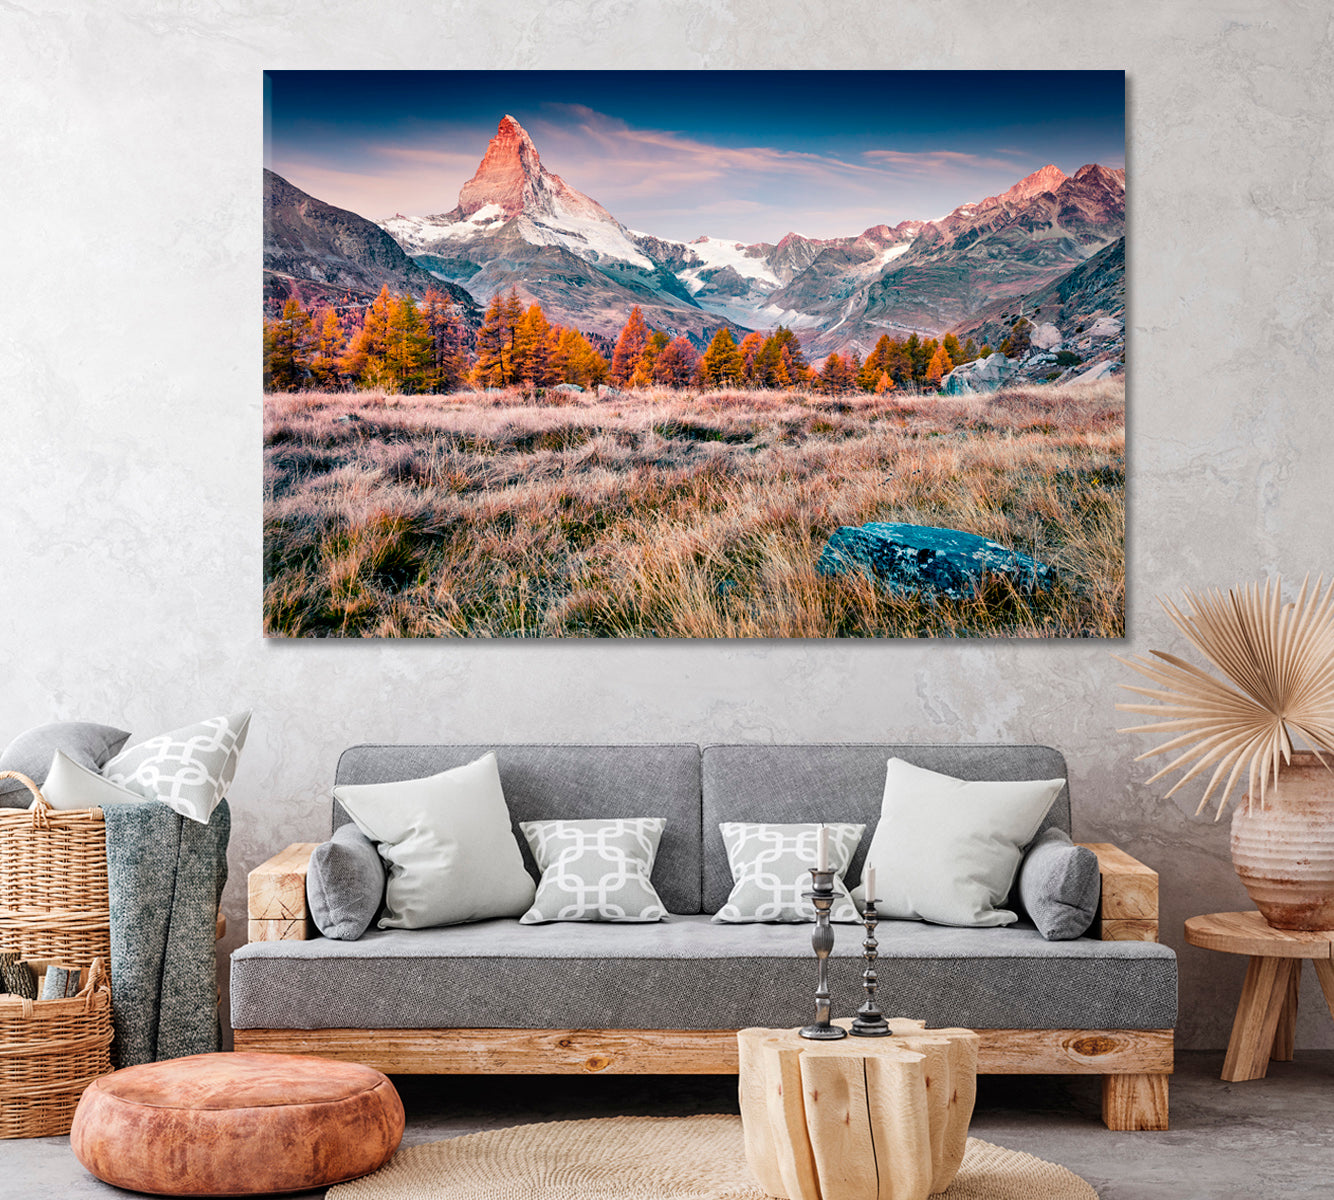 Autumn Landscape Mountain Matterhorn Swiss Alps Canvas Print ArtLexy 1 Panel 24"x16" inches 